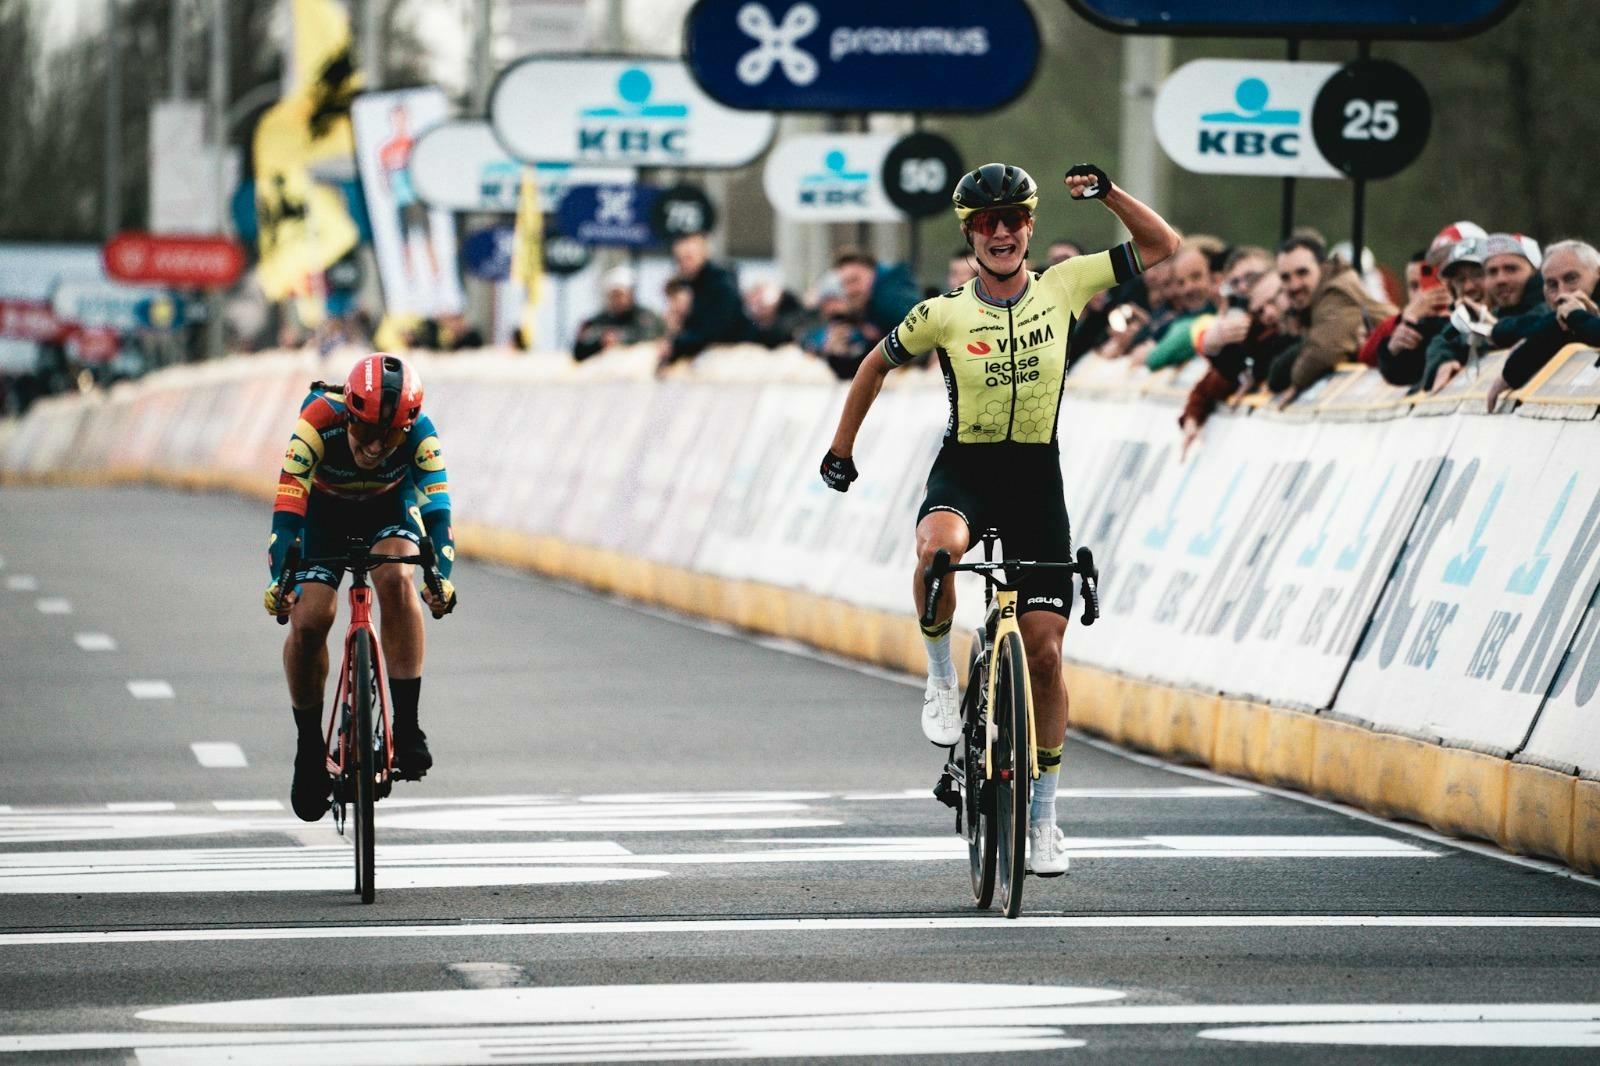 Vos sprint naar eerste overwinning in Dwars door Vlaanderen